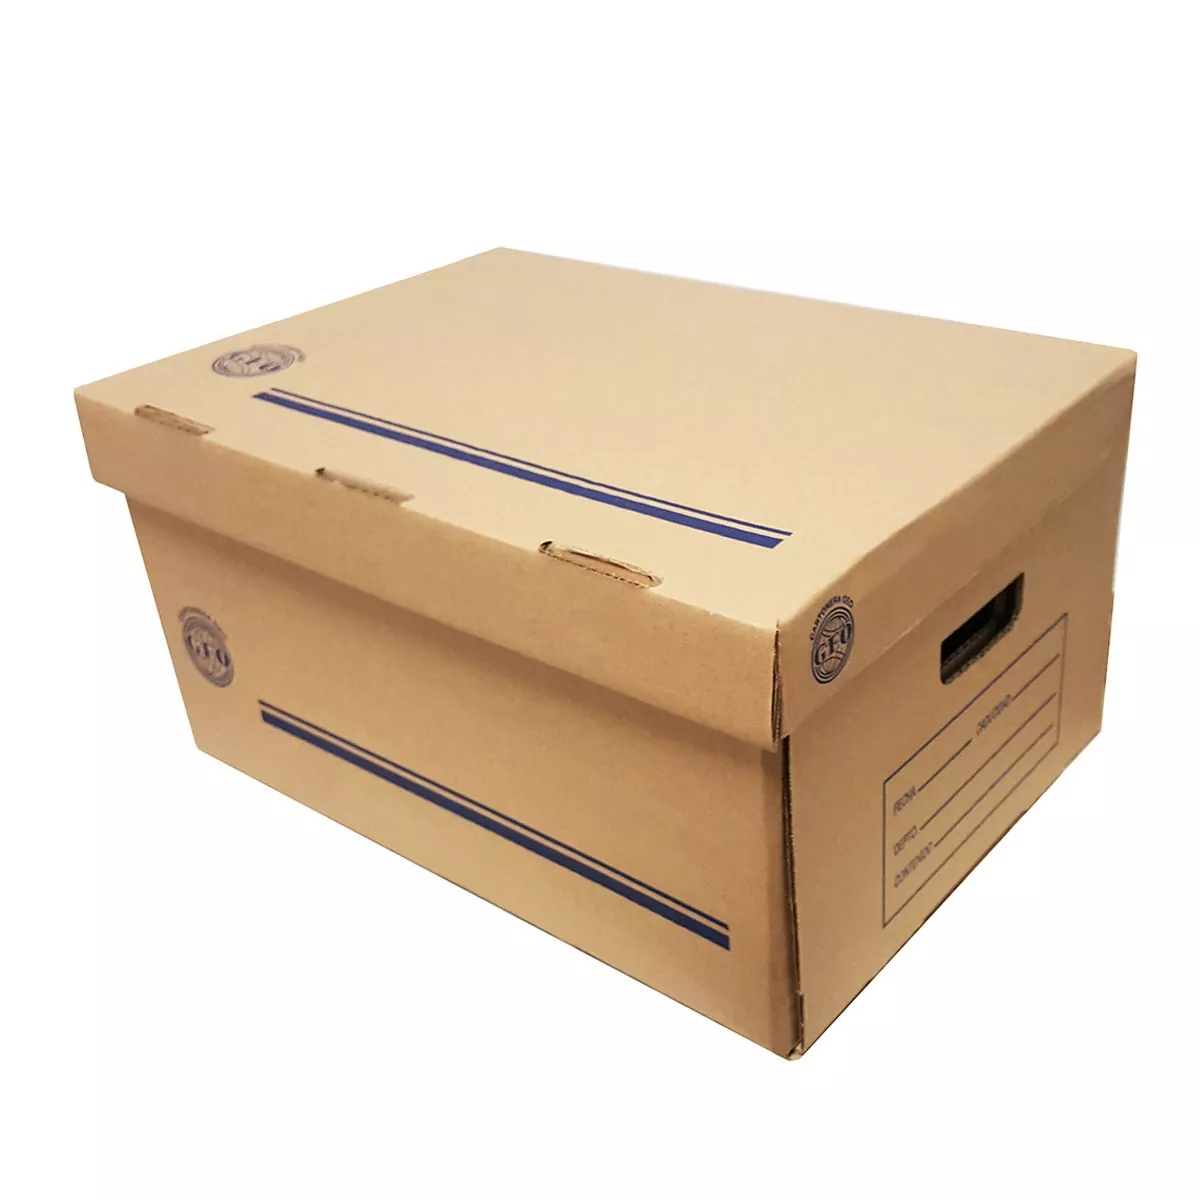 Caja de archivo GEO kraft carta empaque  Medida: 50 x 31 x 25 cm, cartón corrugado sencillo kraft, cartón reciclado, calibre de 3 mm, resistencia 23 ECT, flauta tipo "C".                                                                                                                               con 5 pzas                               - GEO